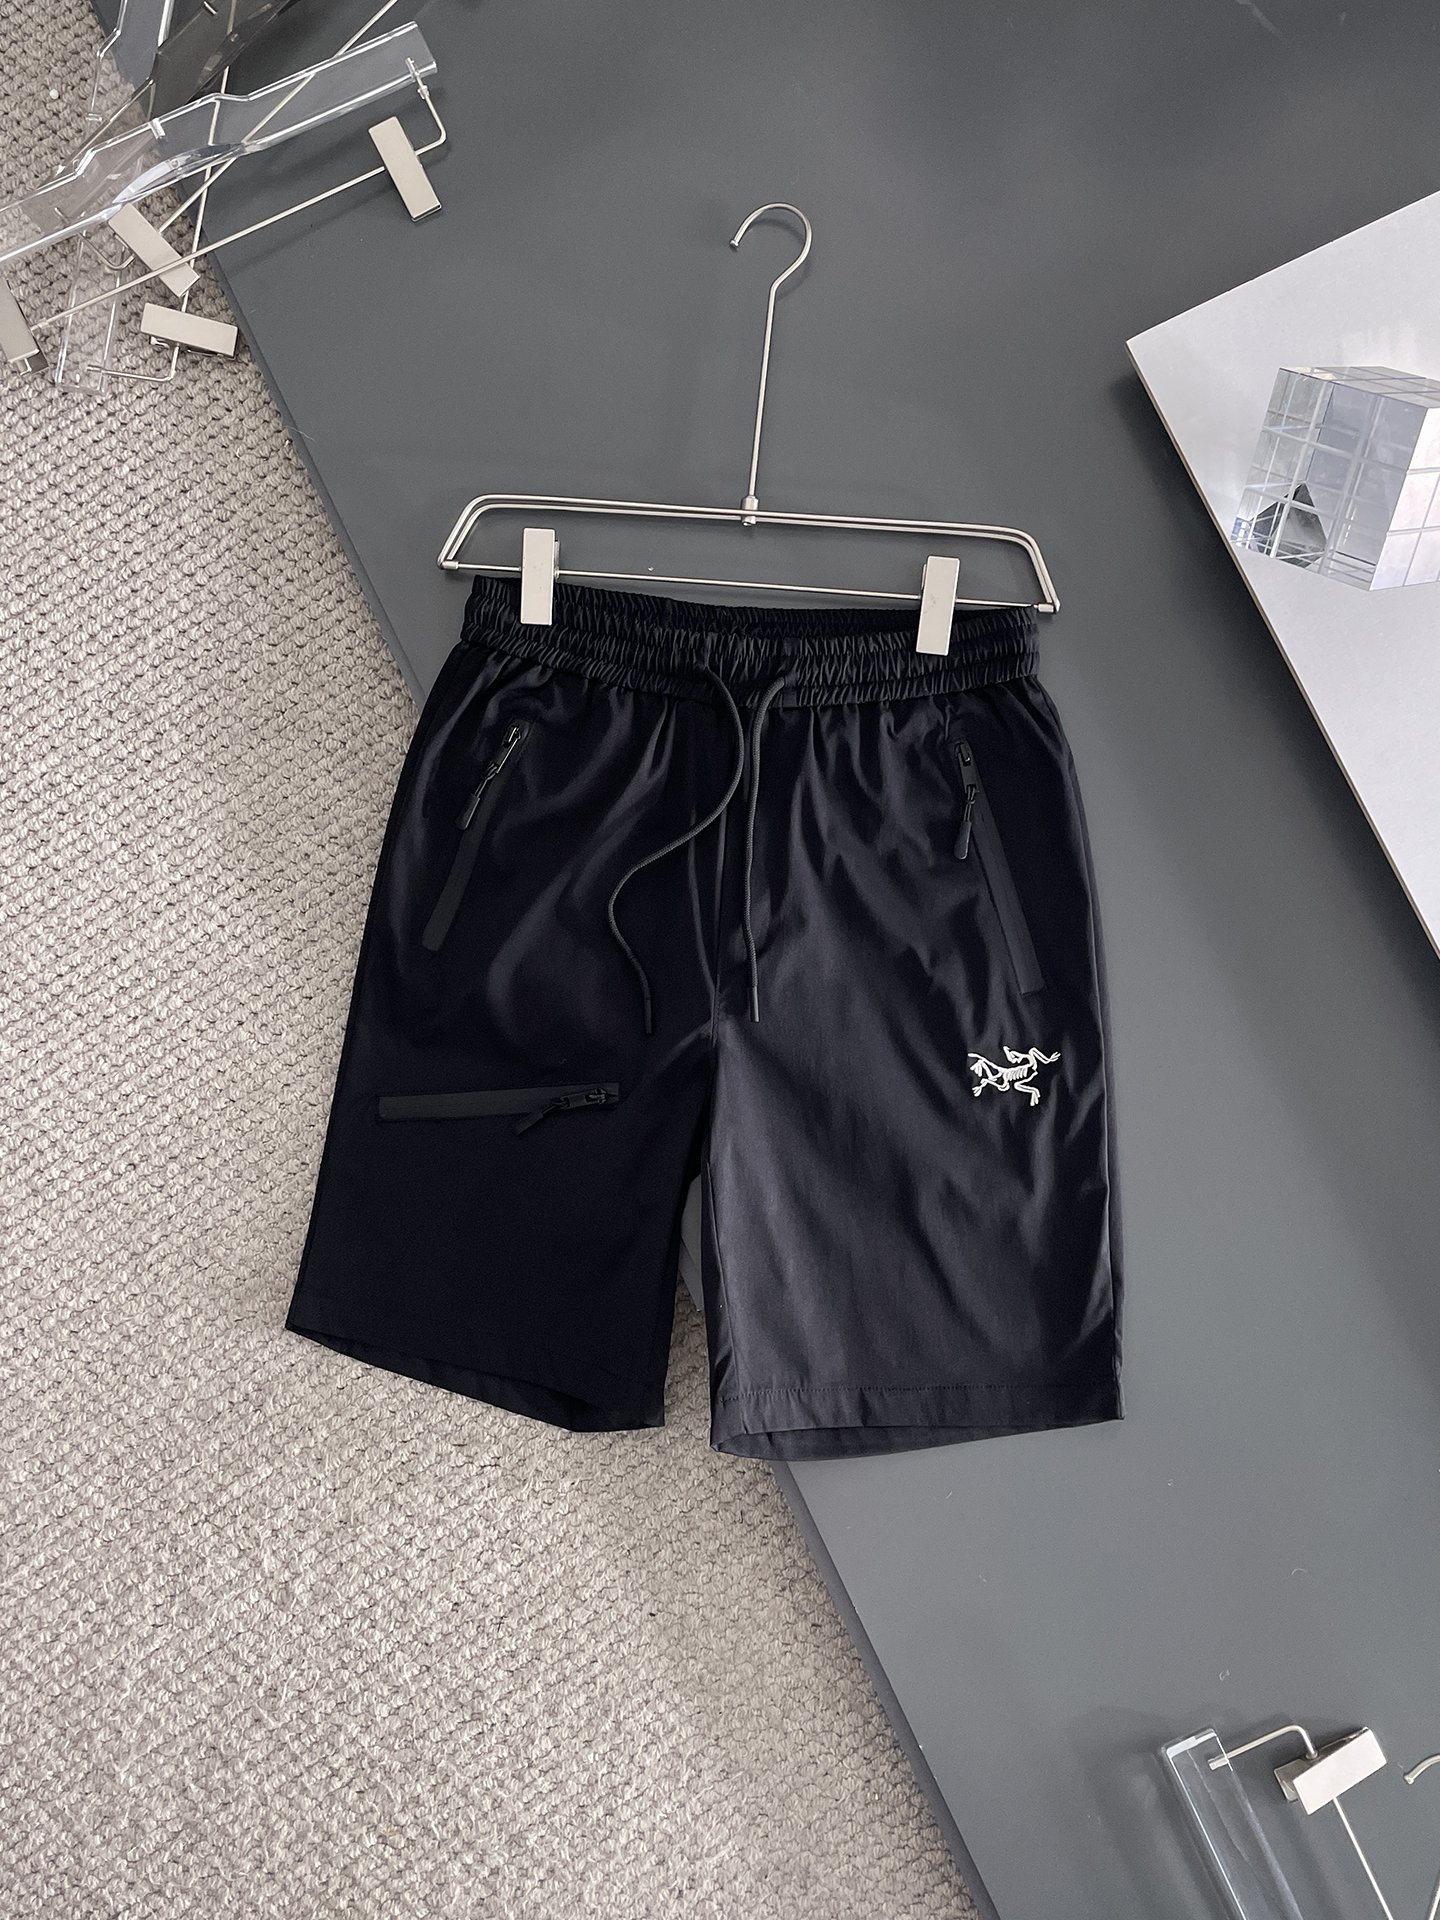 Replcia Cheap
 Arc’teryx Clothing Shorts Replica AAA+ Designer
 Men Summer Collection Casual